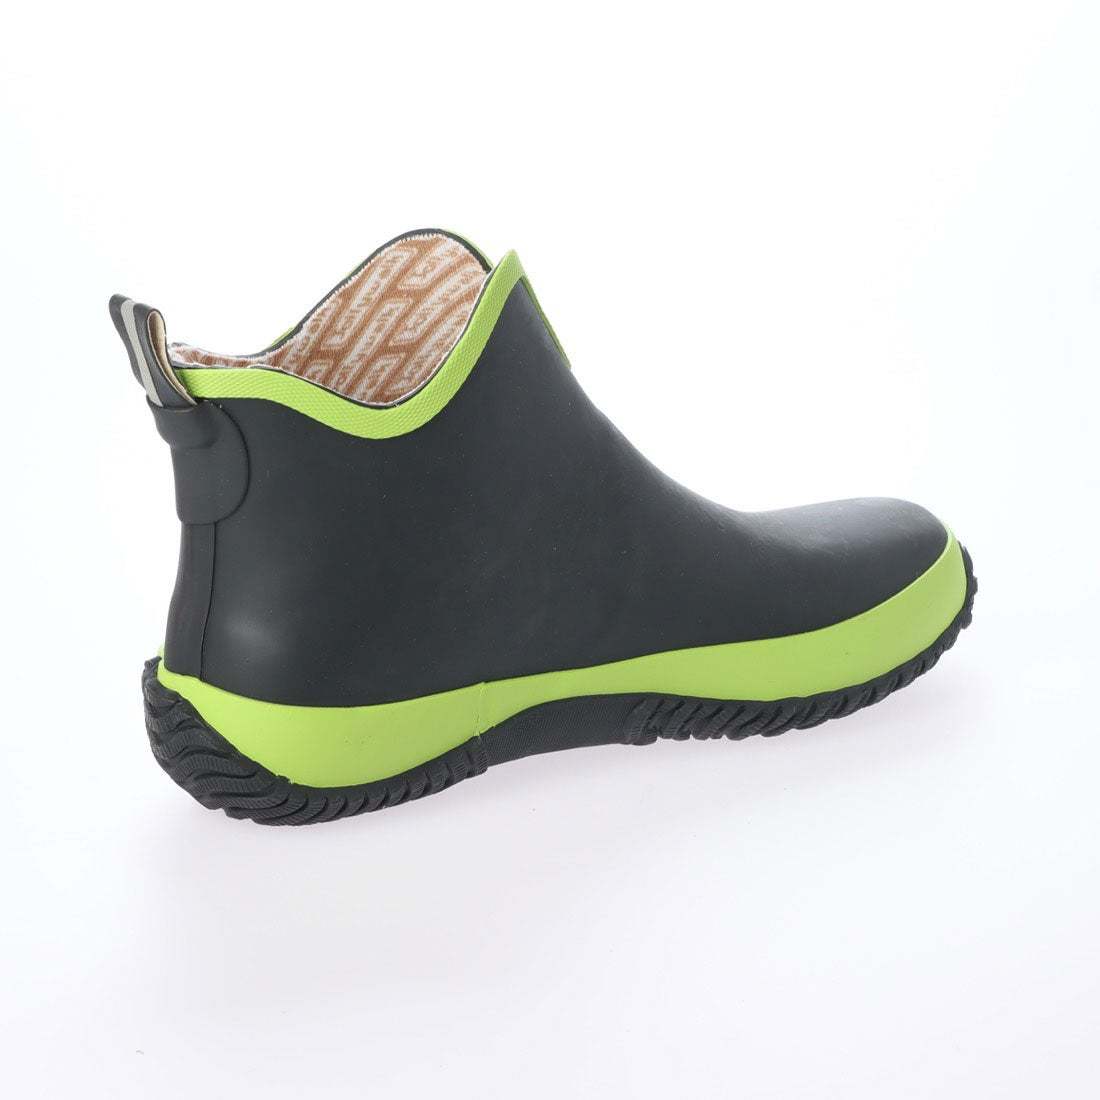 レディースレインブーツ　レインシューズ　長靴　雨靴　天然ゴム素材　新品『20089-blk-grn-230』23.0cm　在庫一掃セール